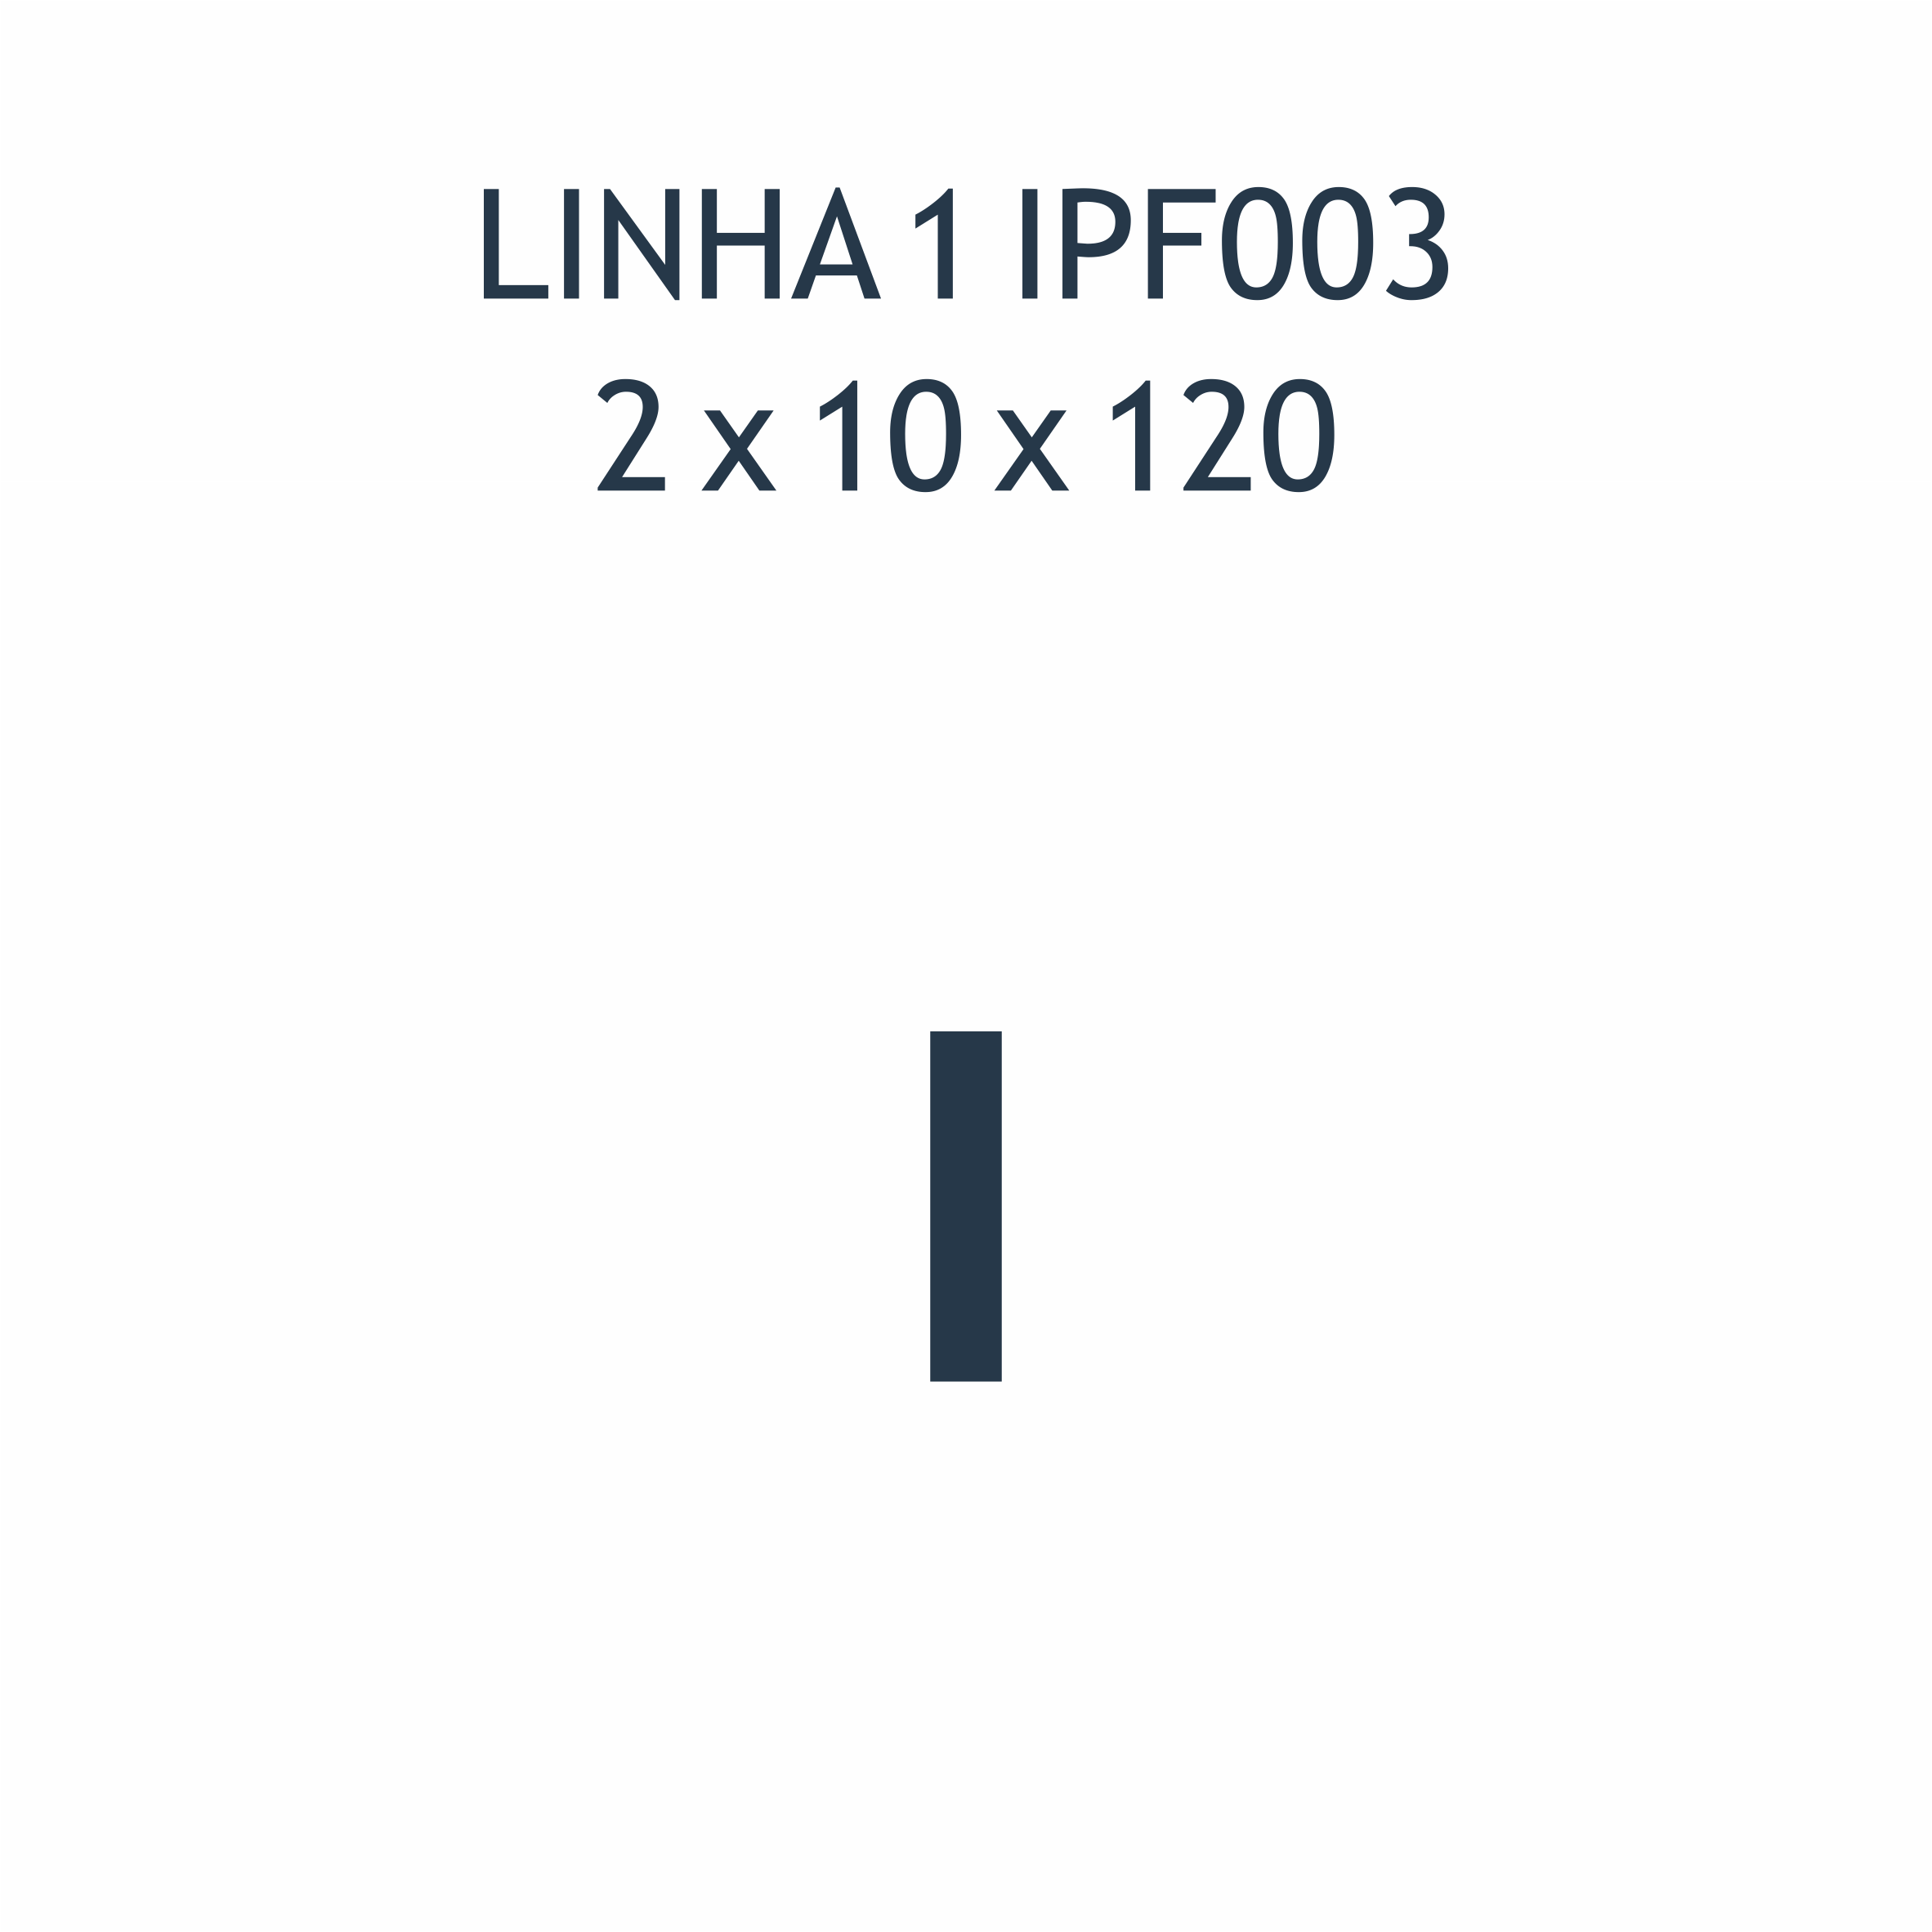 L1 IPF003